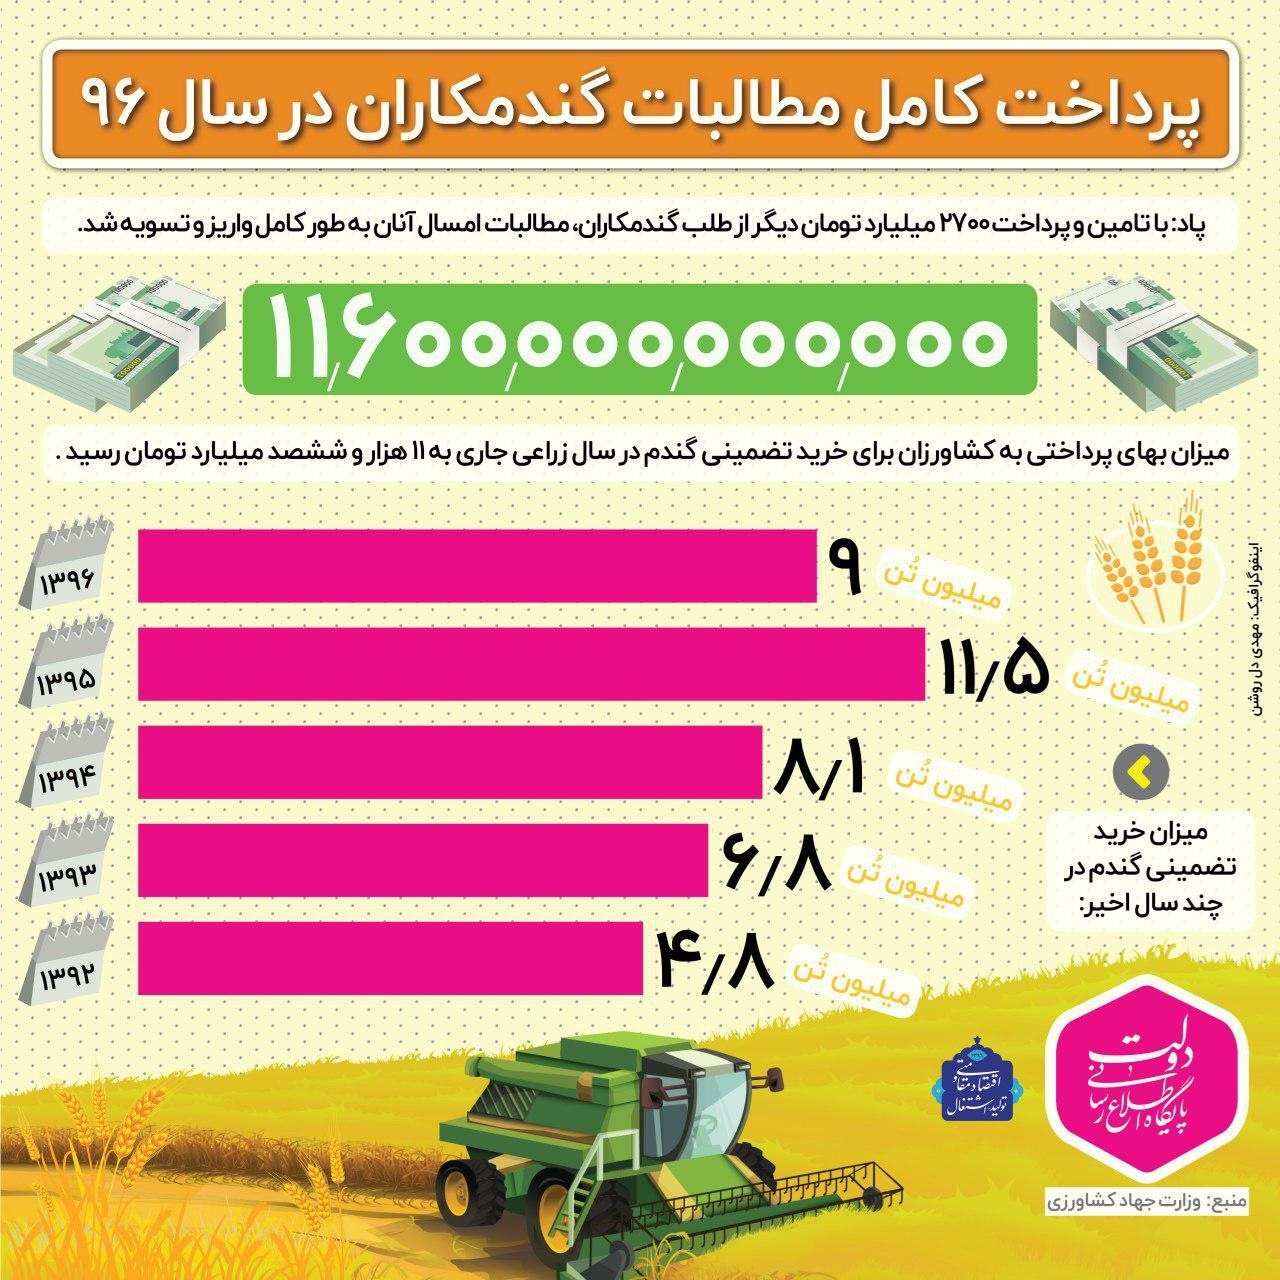 اینفوگرافیک میزان خرید گندم از سوی دولت حسن روحانی